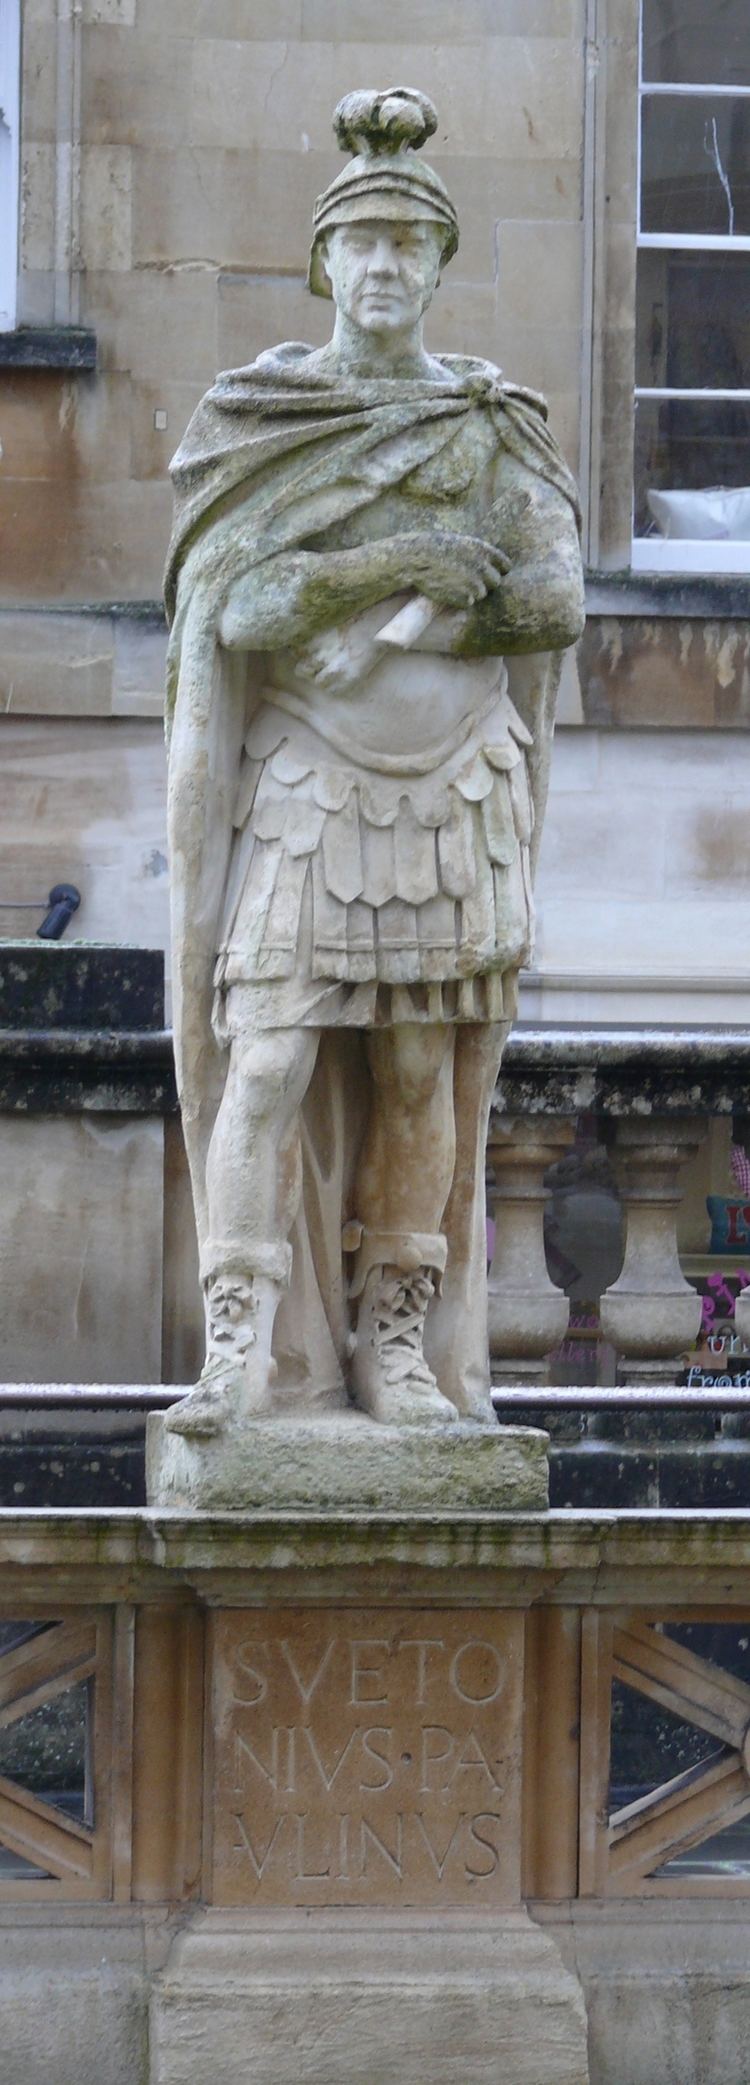 Gaius Suetonius Paulinus FileRoman baths suetonius paulinus 01JPG Wikimedia Commons